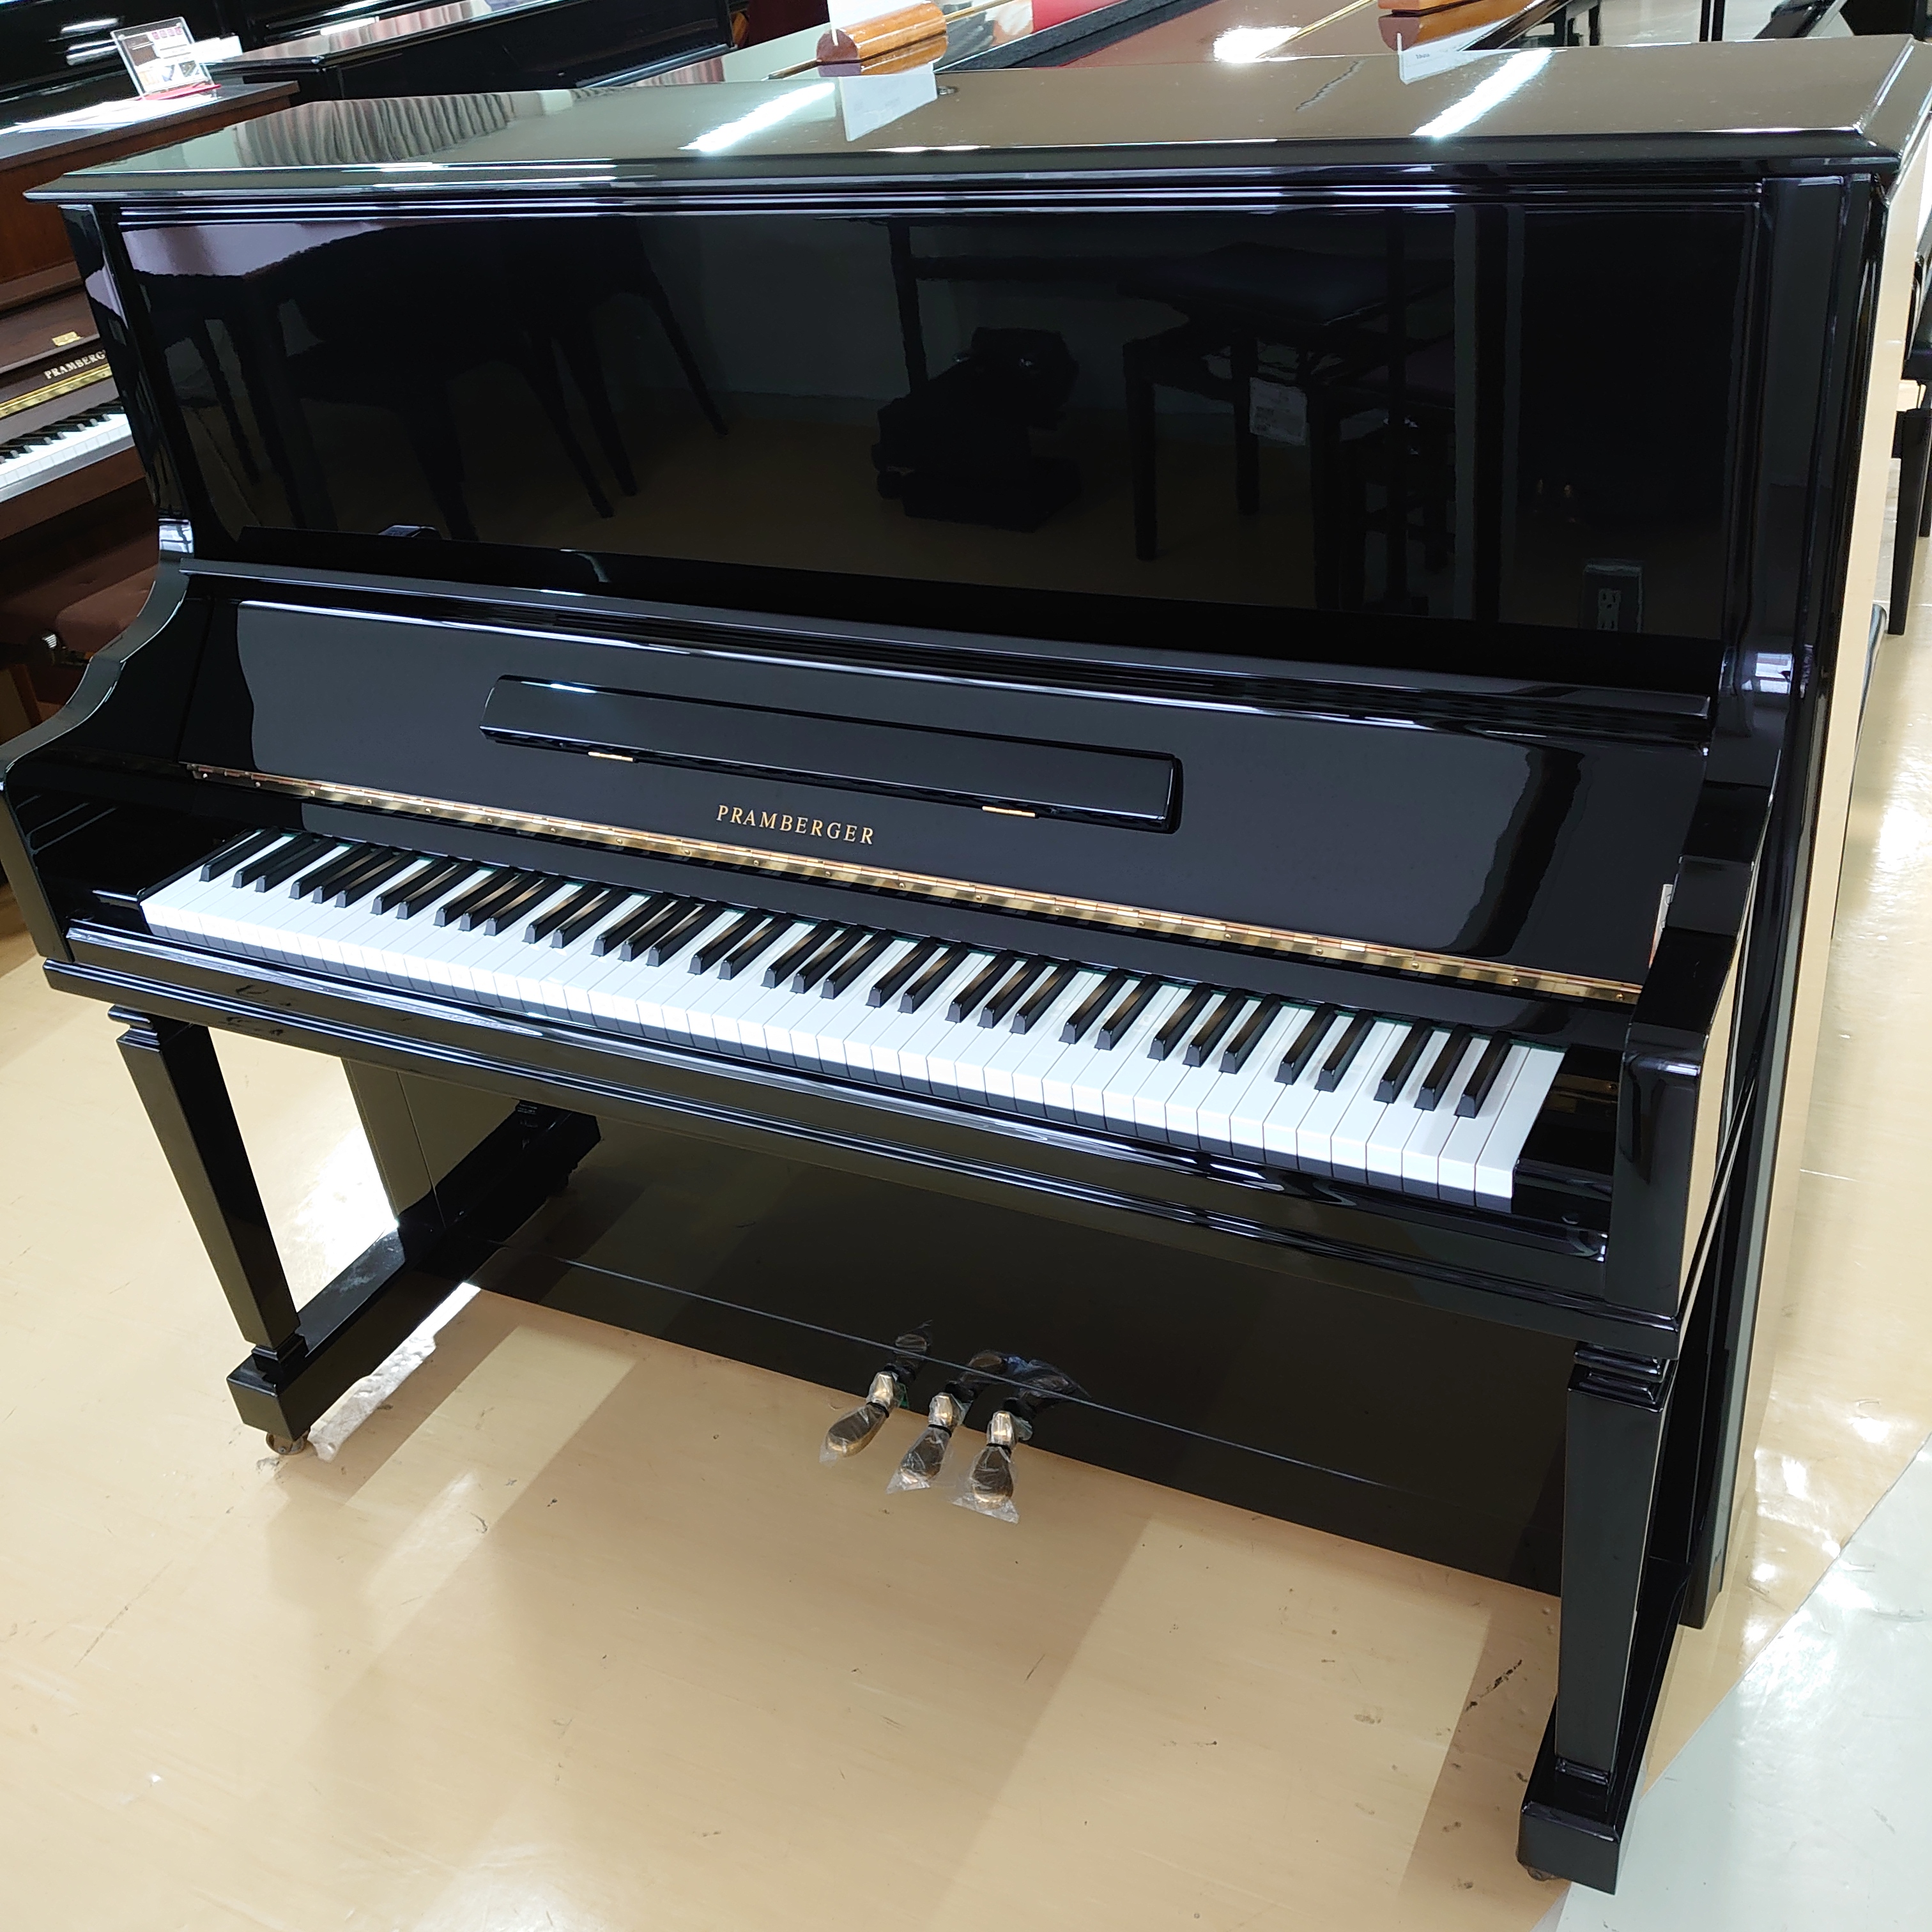 展示ピアノご紹介 プレンバーガー Jp52 09年製 ピアノセレクションセンター 店舗情報 島村楽器